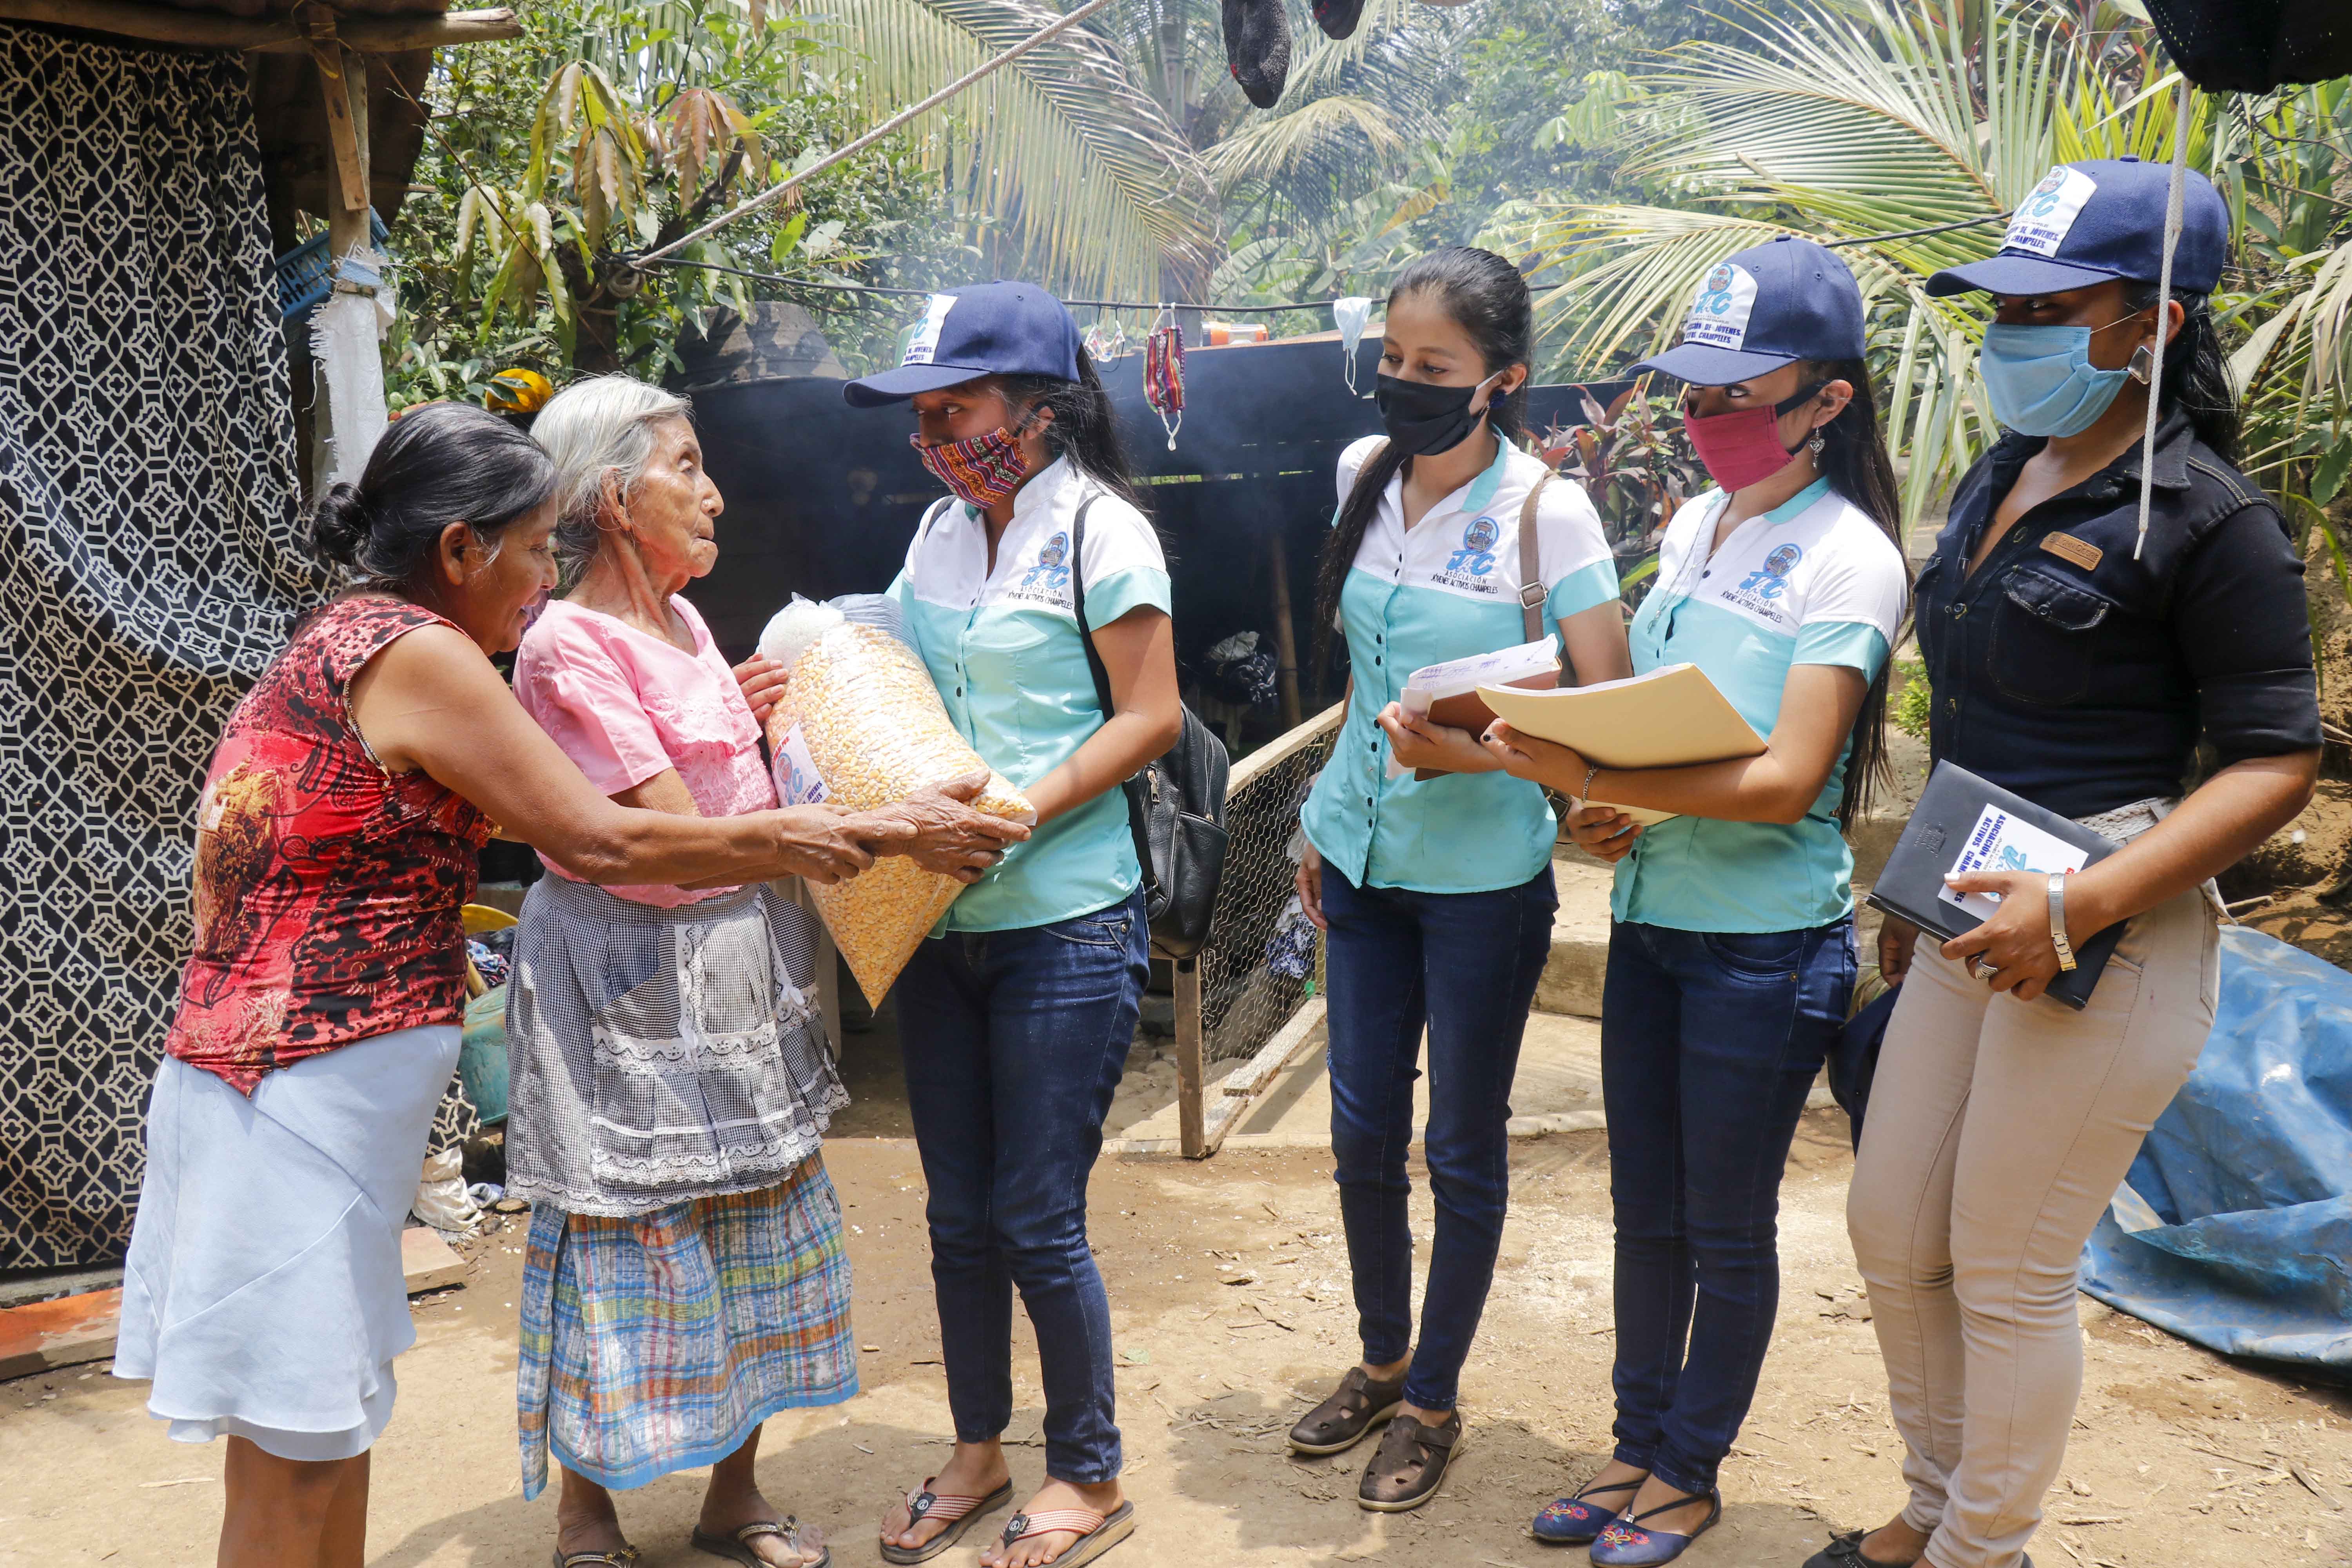 La asociación de jóvenes ayudará por tres meses a 100 familias de San Felipe, Retalhuleu. (Foto Prensa Libre: Rolando Miranda)